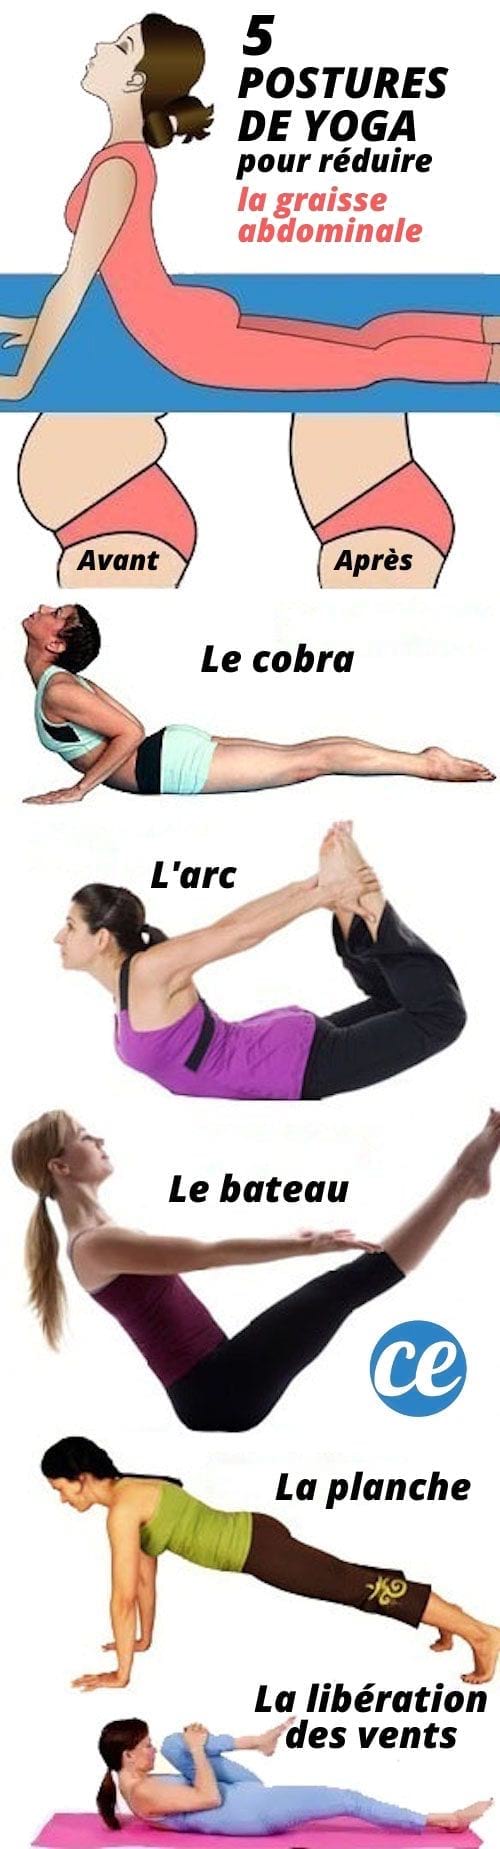 Ejercicios de yoga para tener un vientre plano